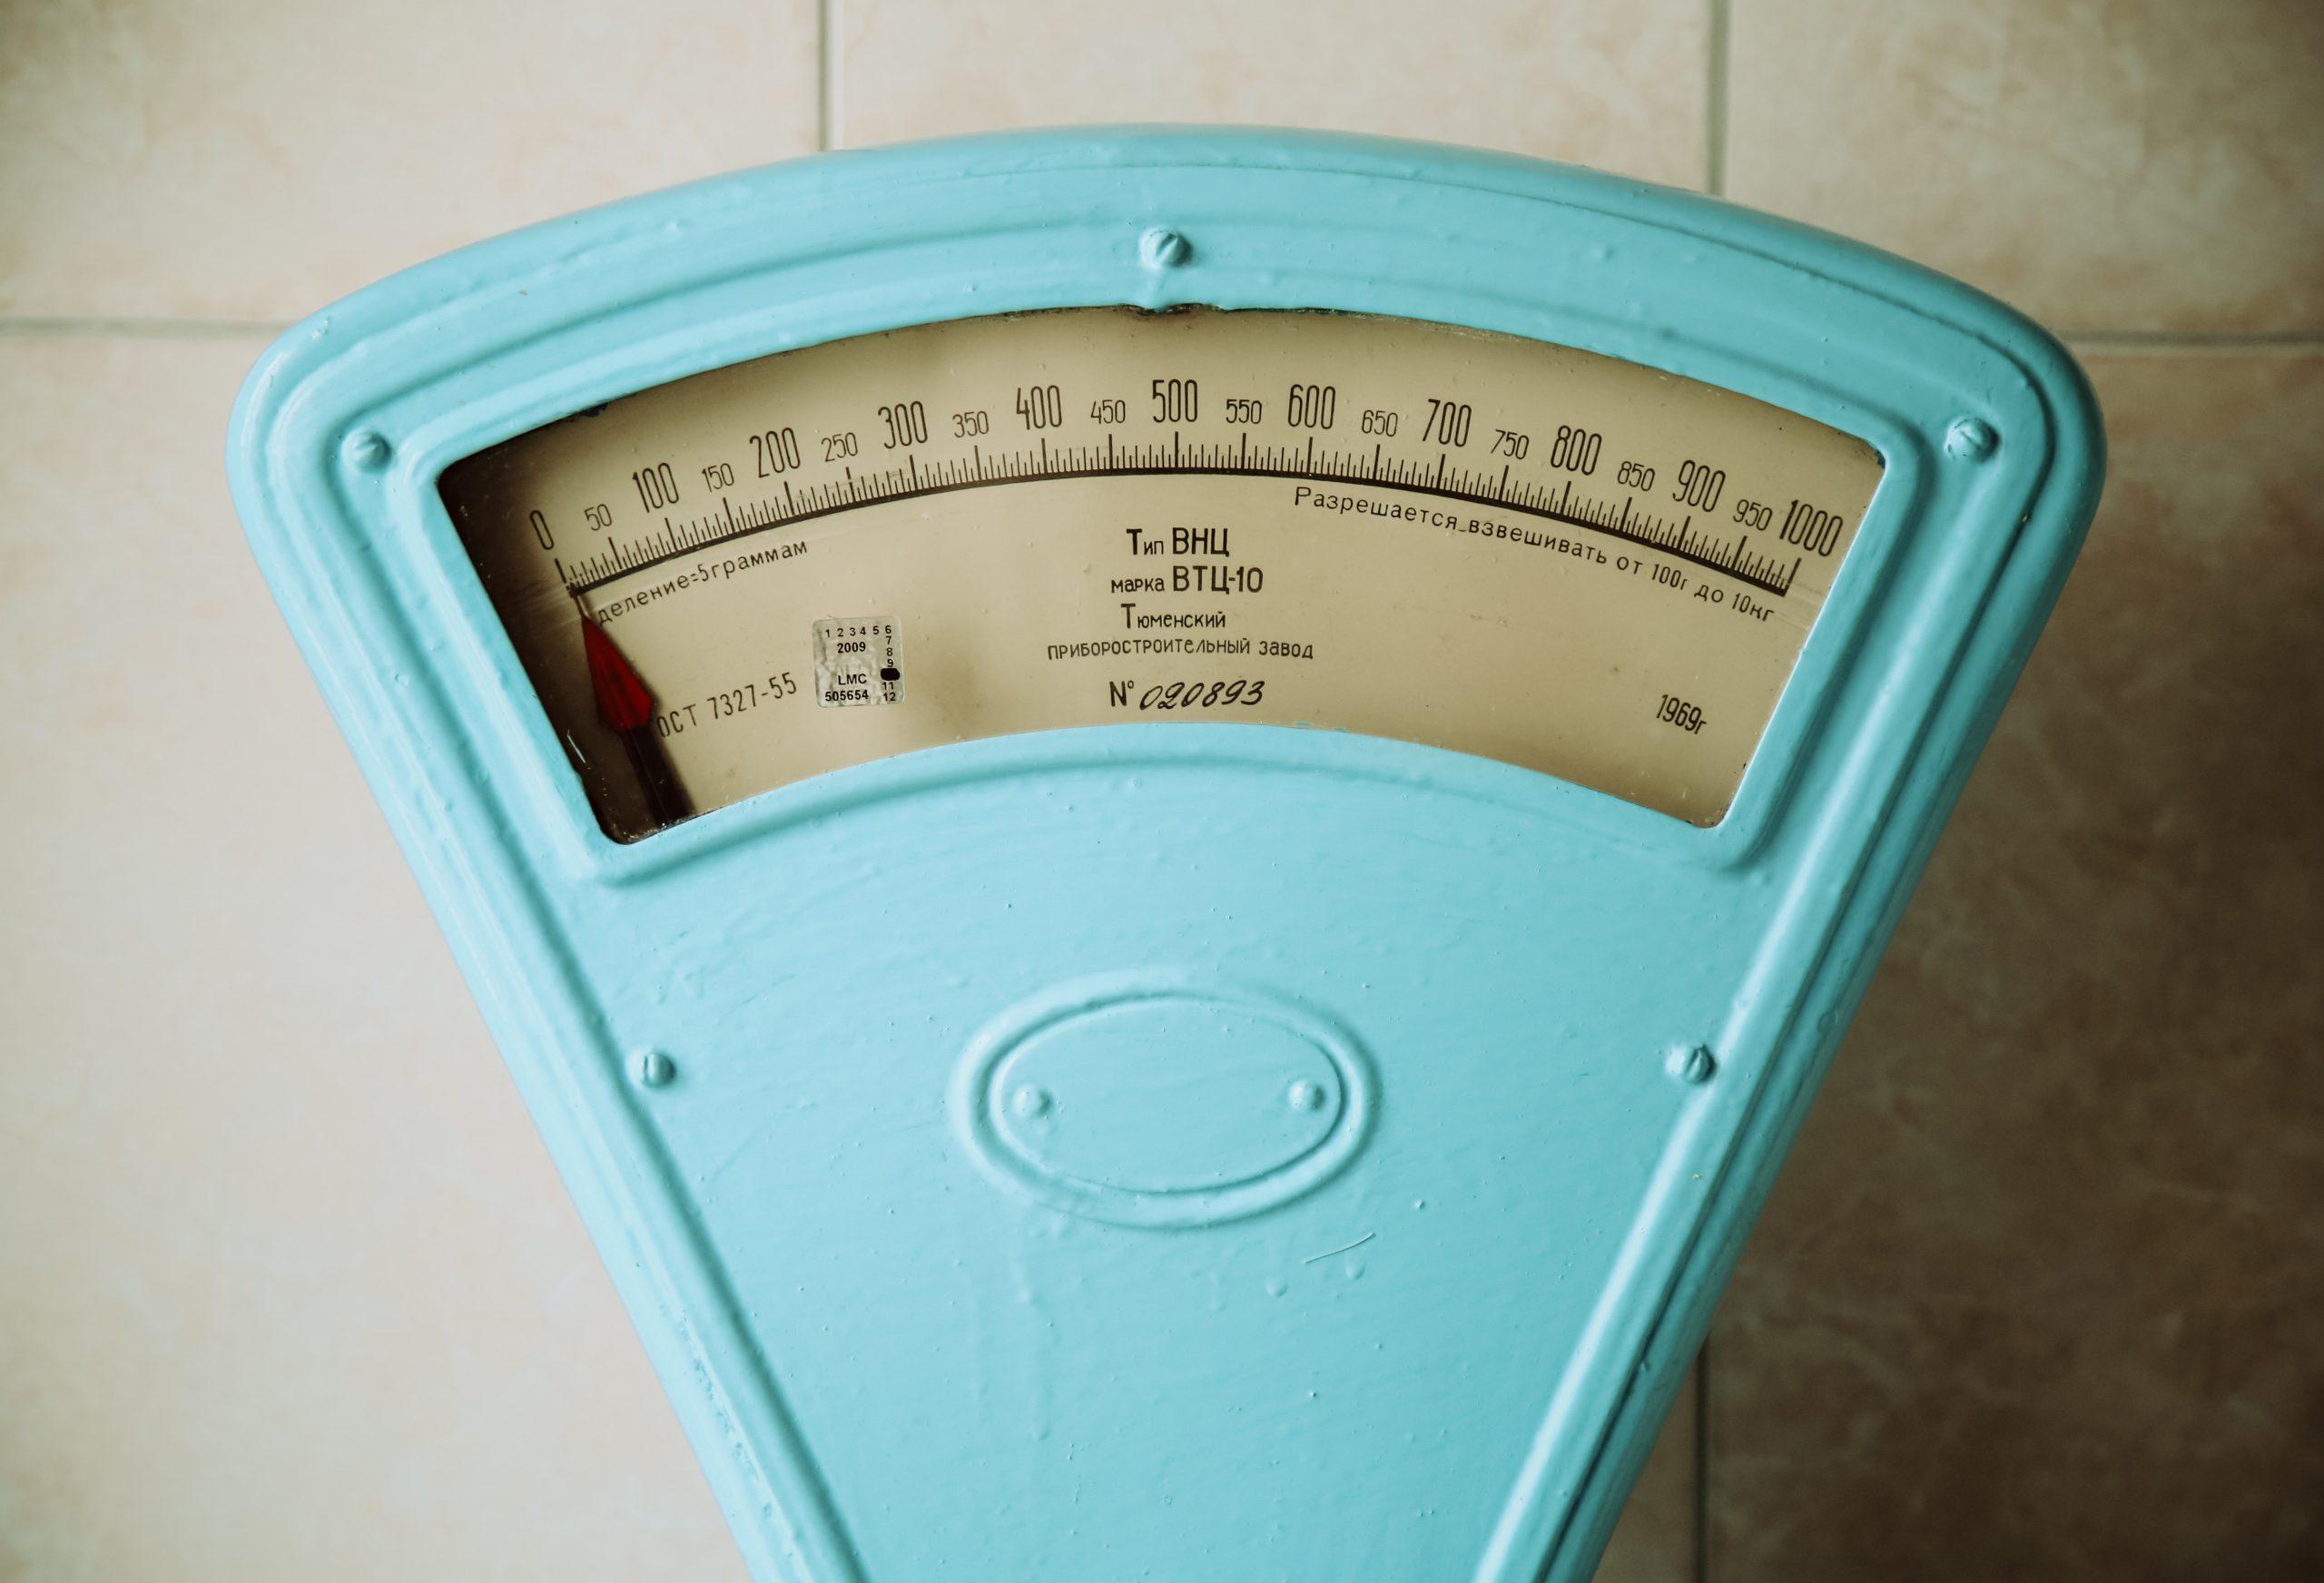 Bác sĩ sẽ cho bạn biết liệu chỉ số BMI (Chỉ số khối cơ thể) của bạn có nằm trong phạm vi bình thường, thừa cân hoặc béo phì hay không. (Nguồn: Internet)